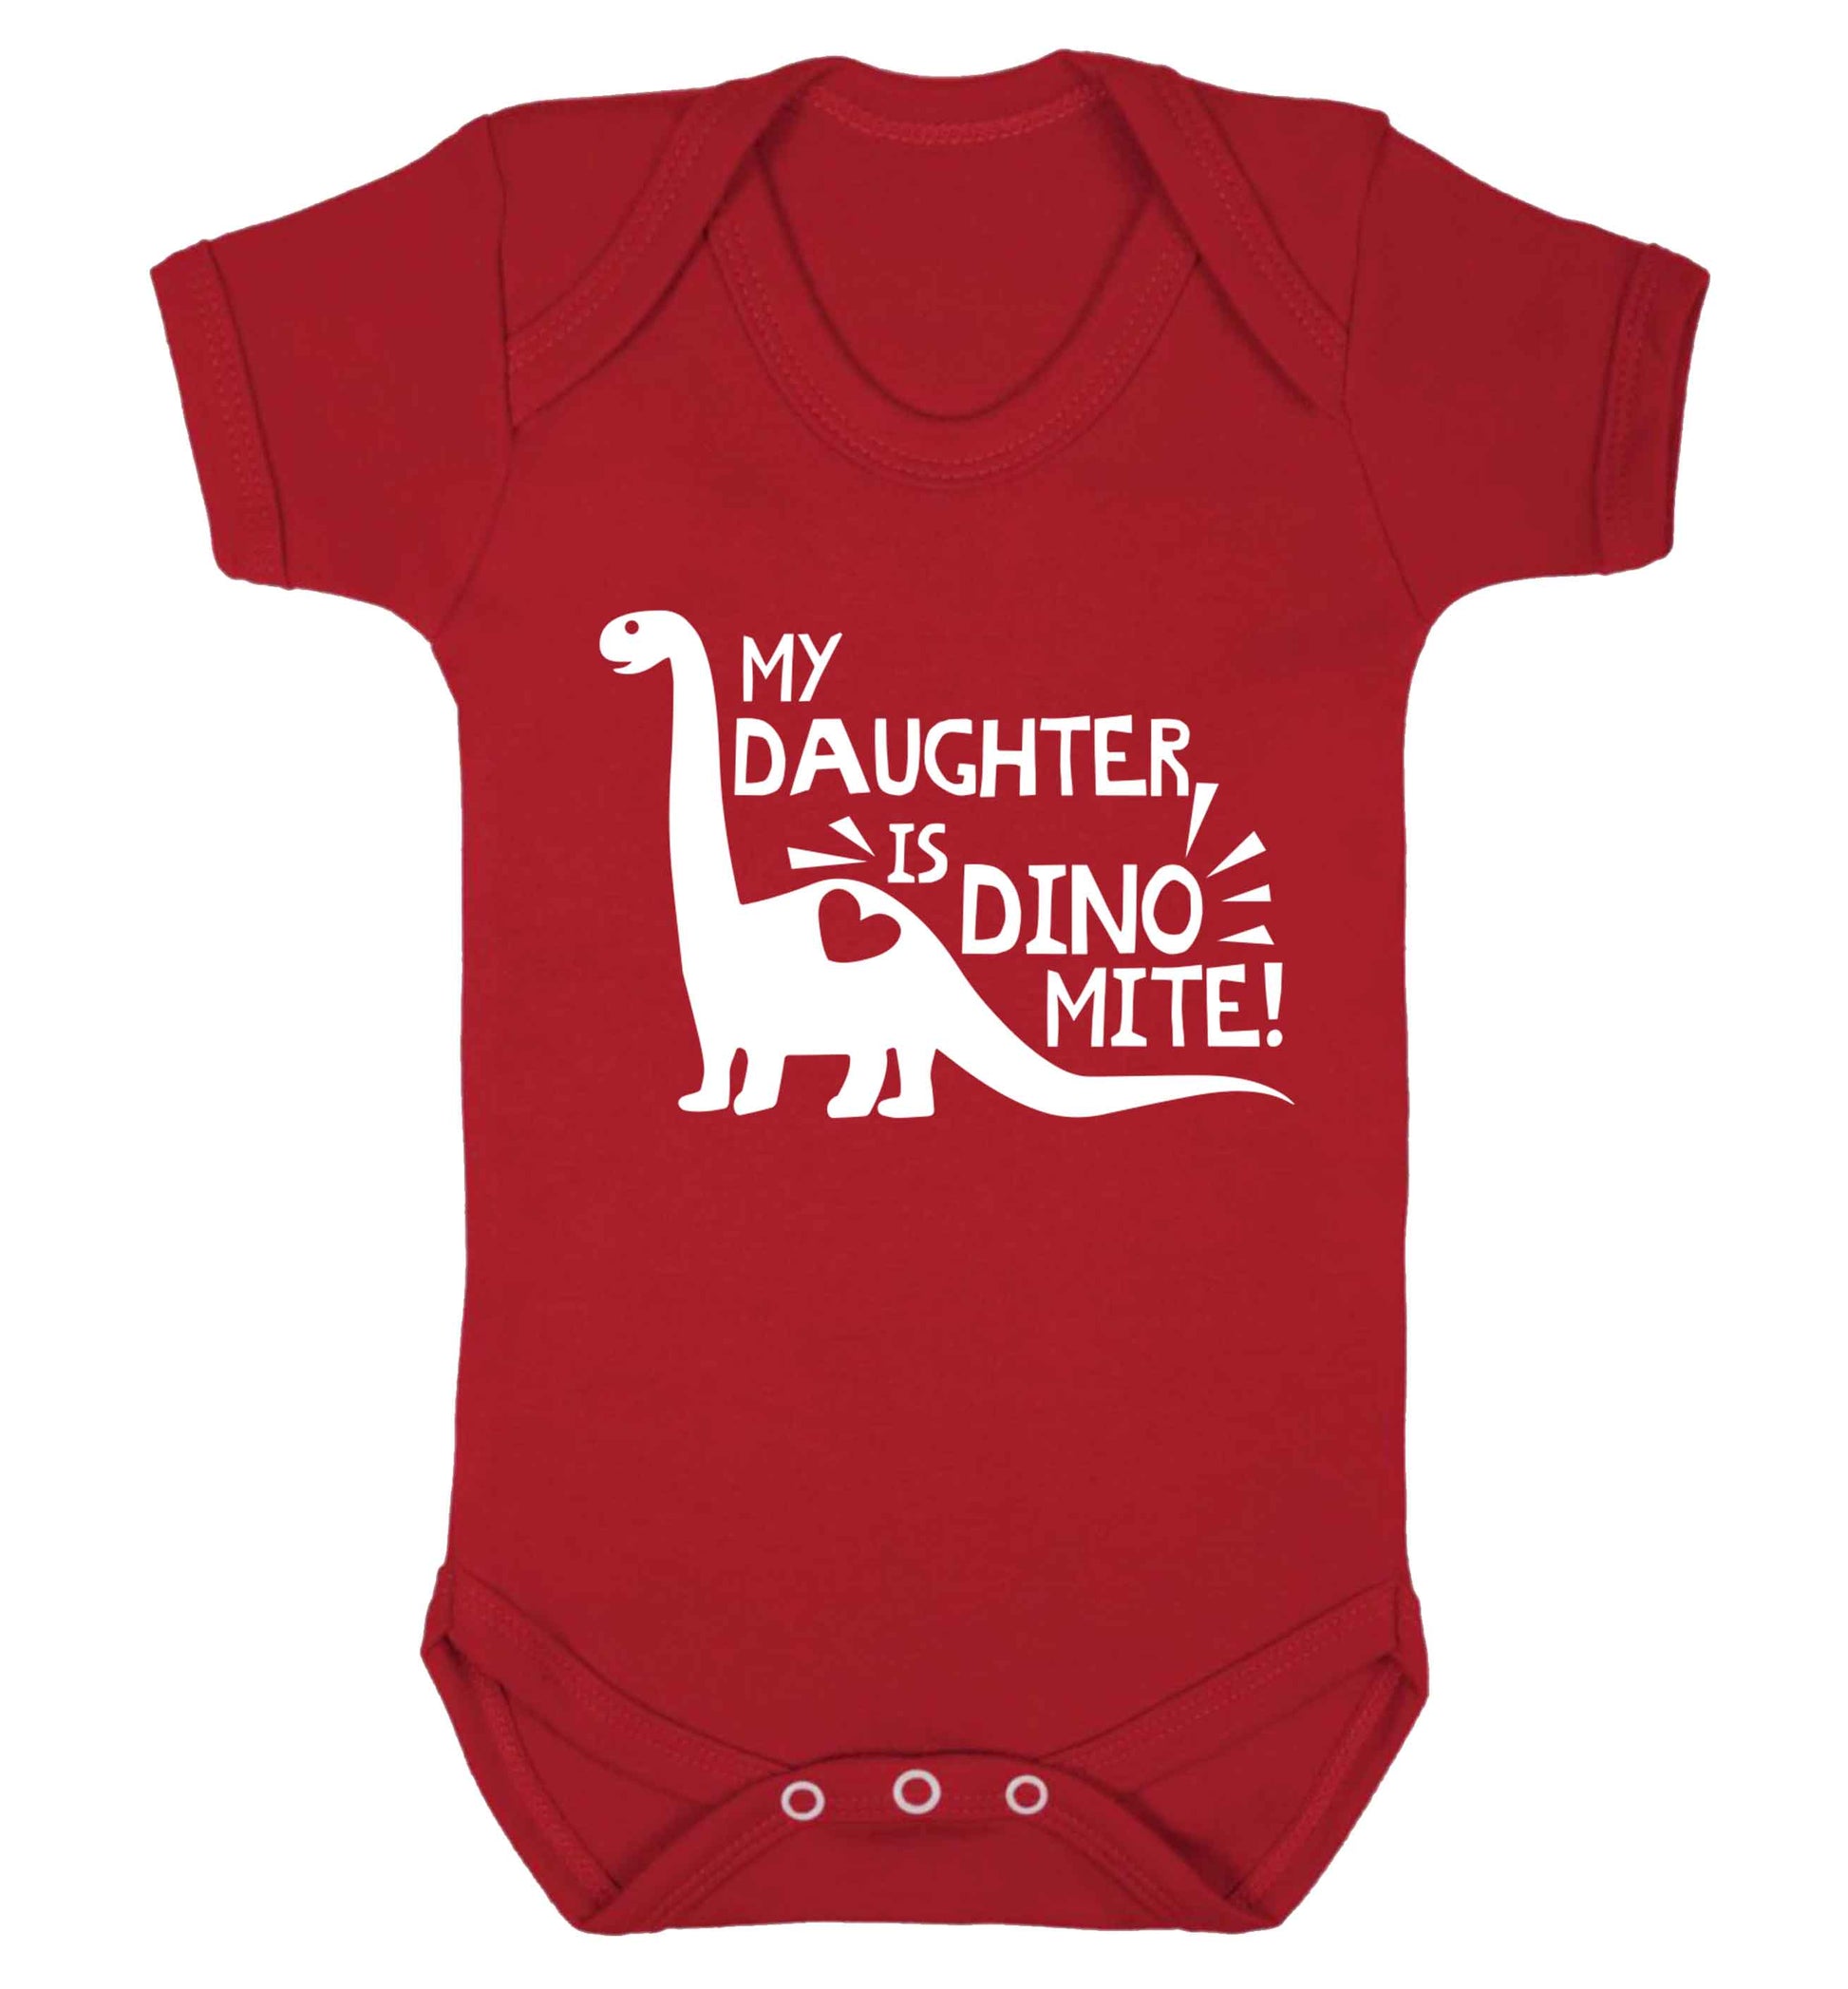 My daughter is dinomite! Baby Vest red 18-24 months